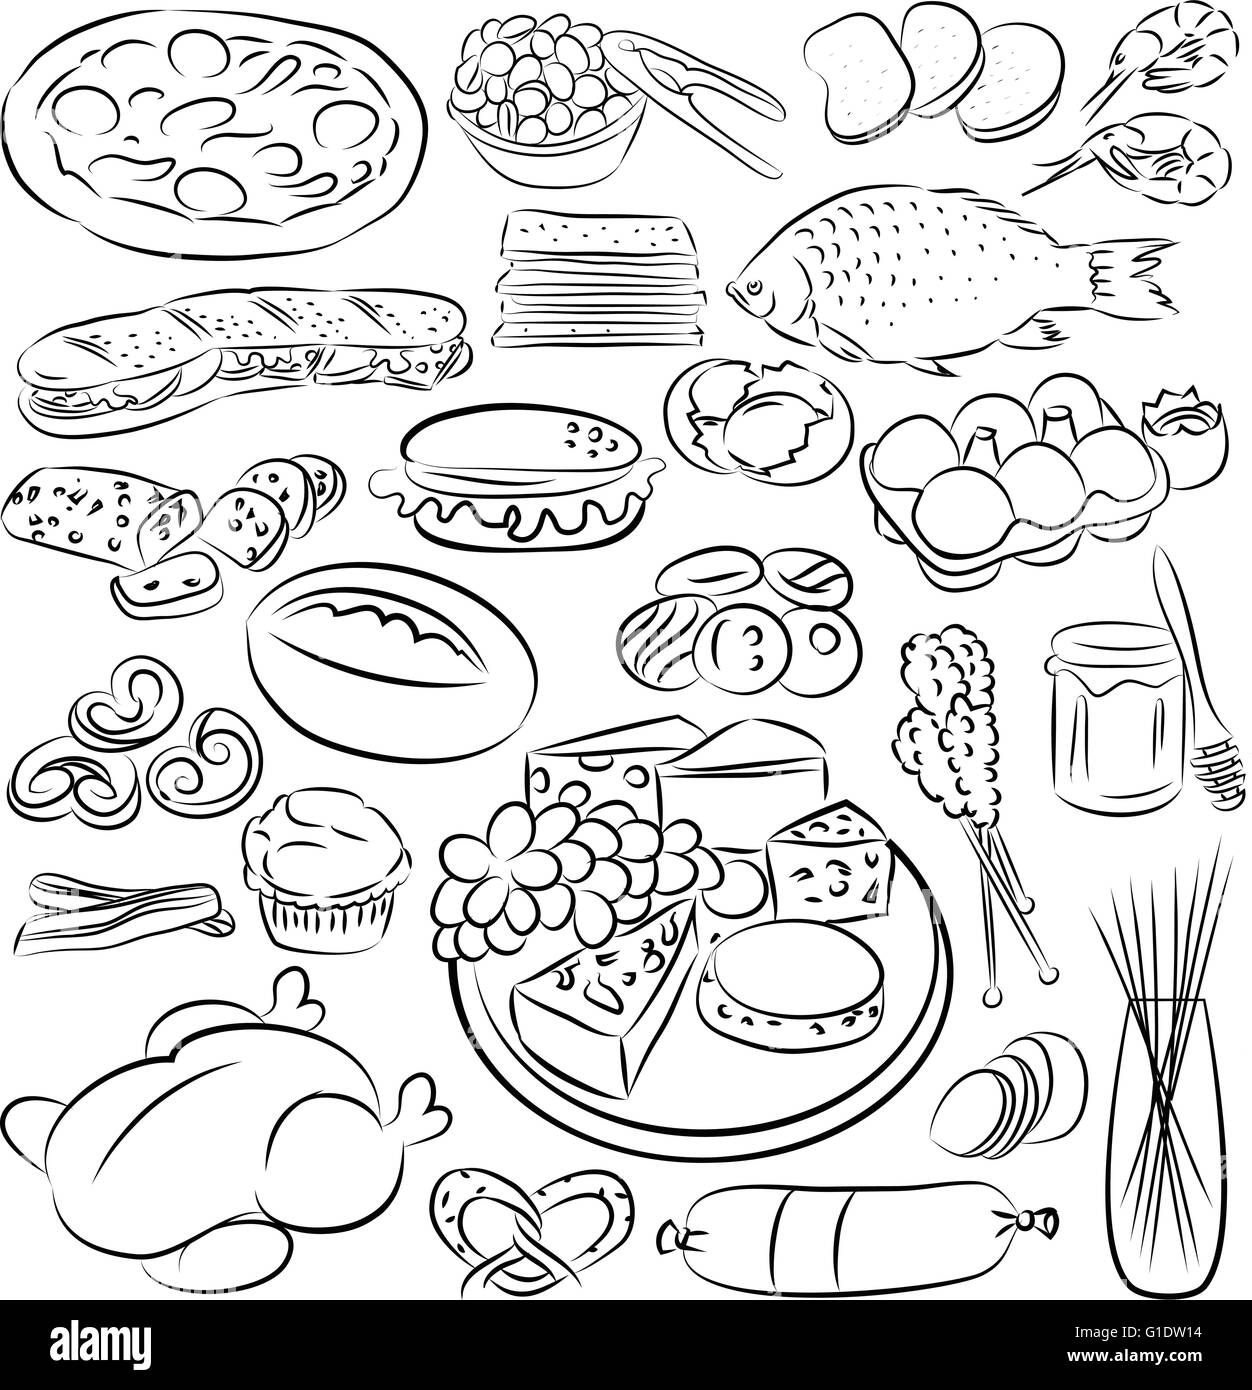 Vektor-Illustration Essen Kollektion in schwarz / weiß Stock